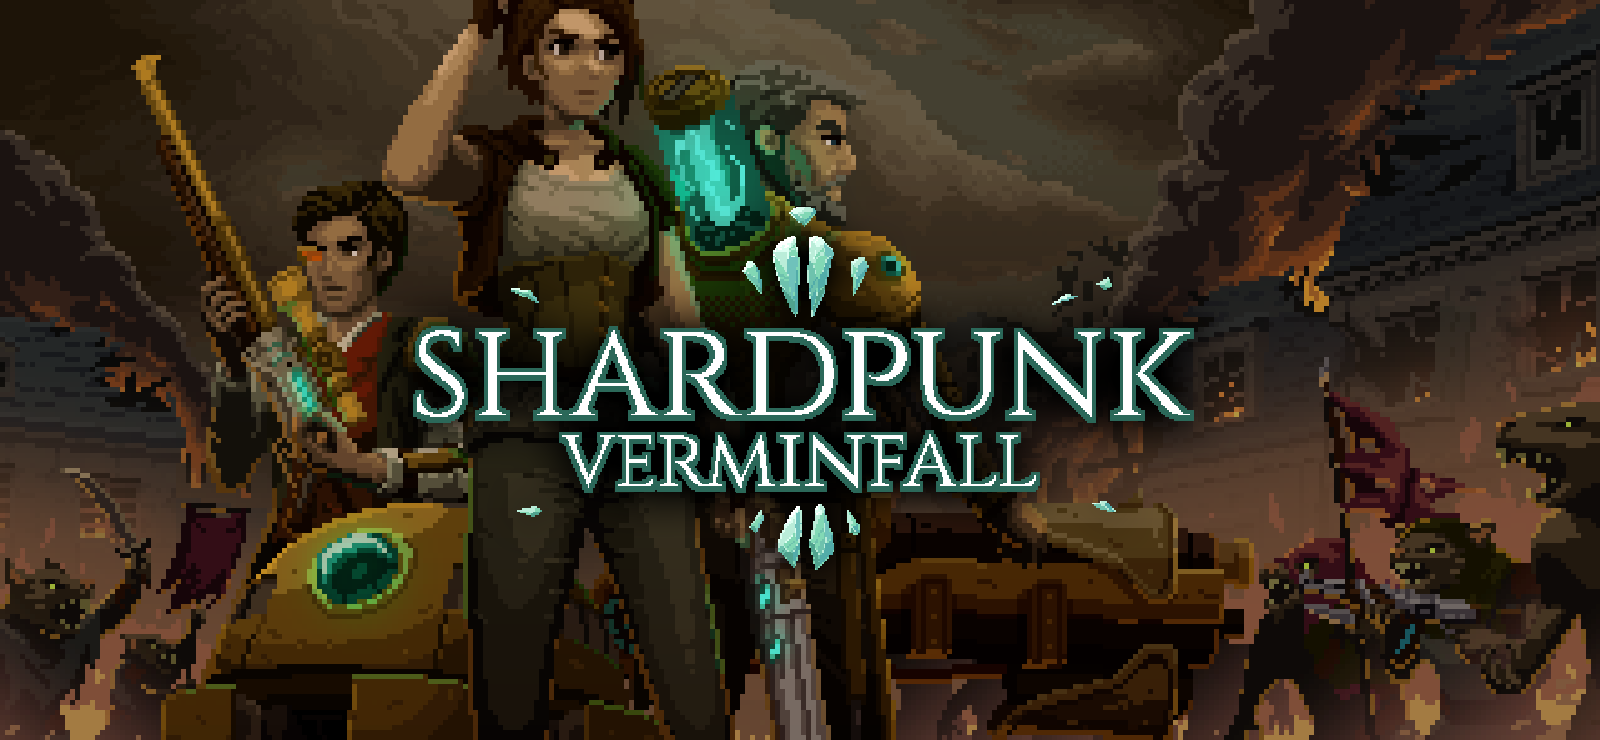 Shardpunk: Verminfall, presto in arrivo su PC 6